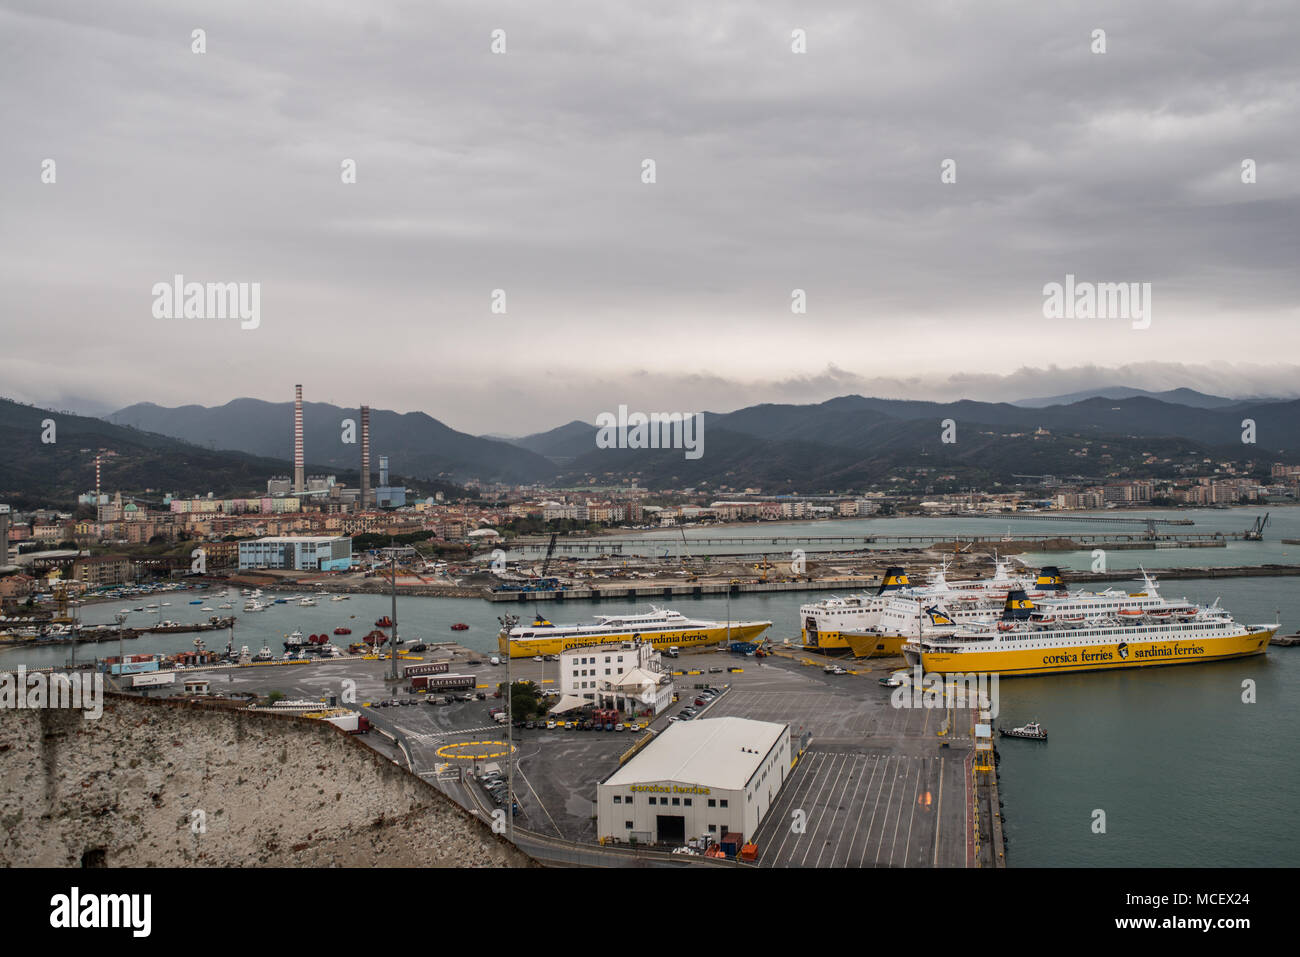 Vue sur le port de S. Giacomo Fort à Vado Ligure, Italie Banque D'Images